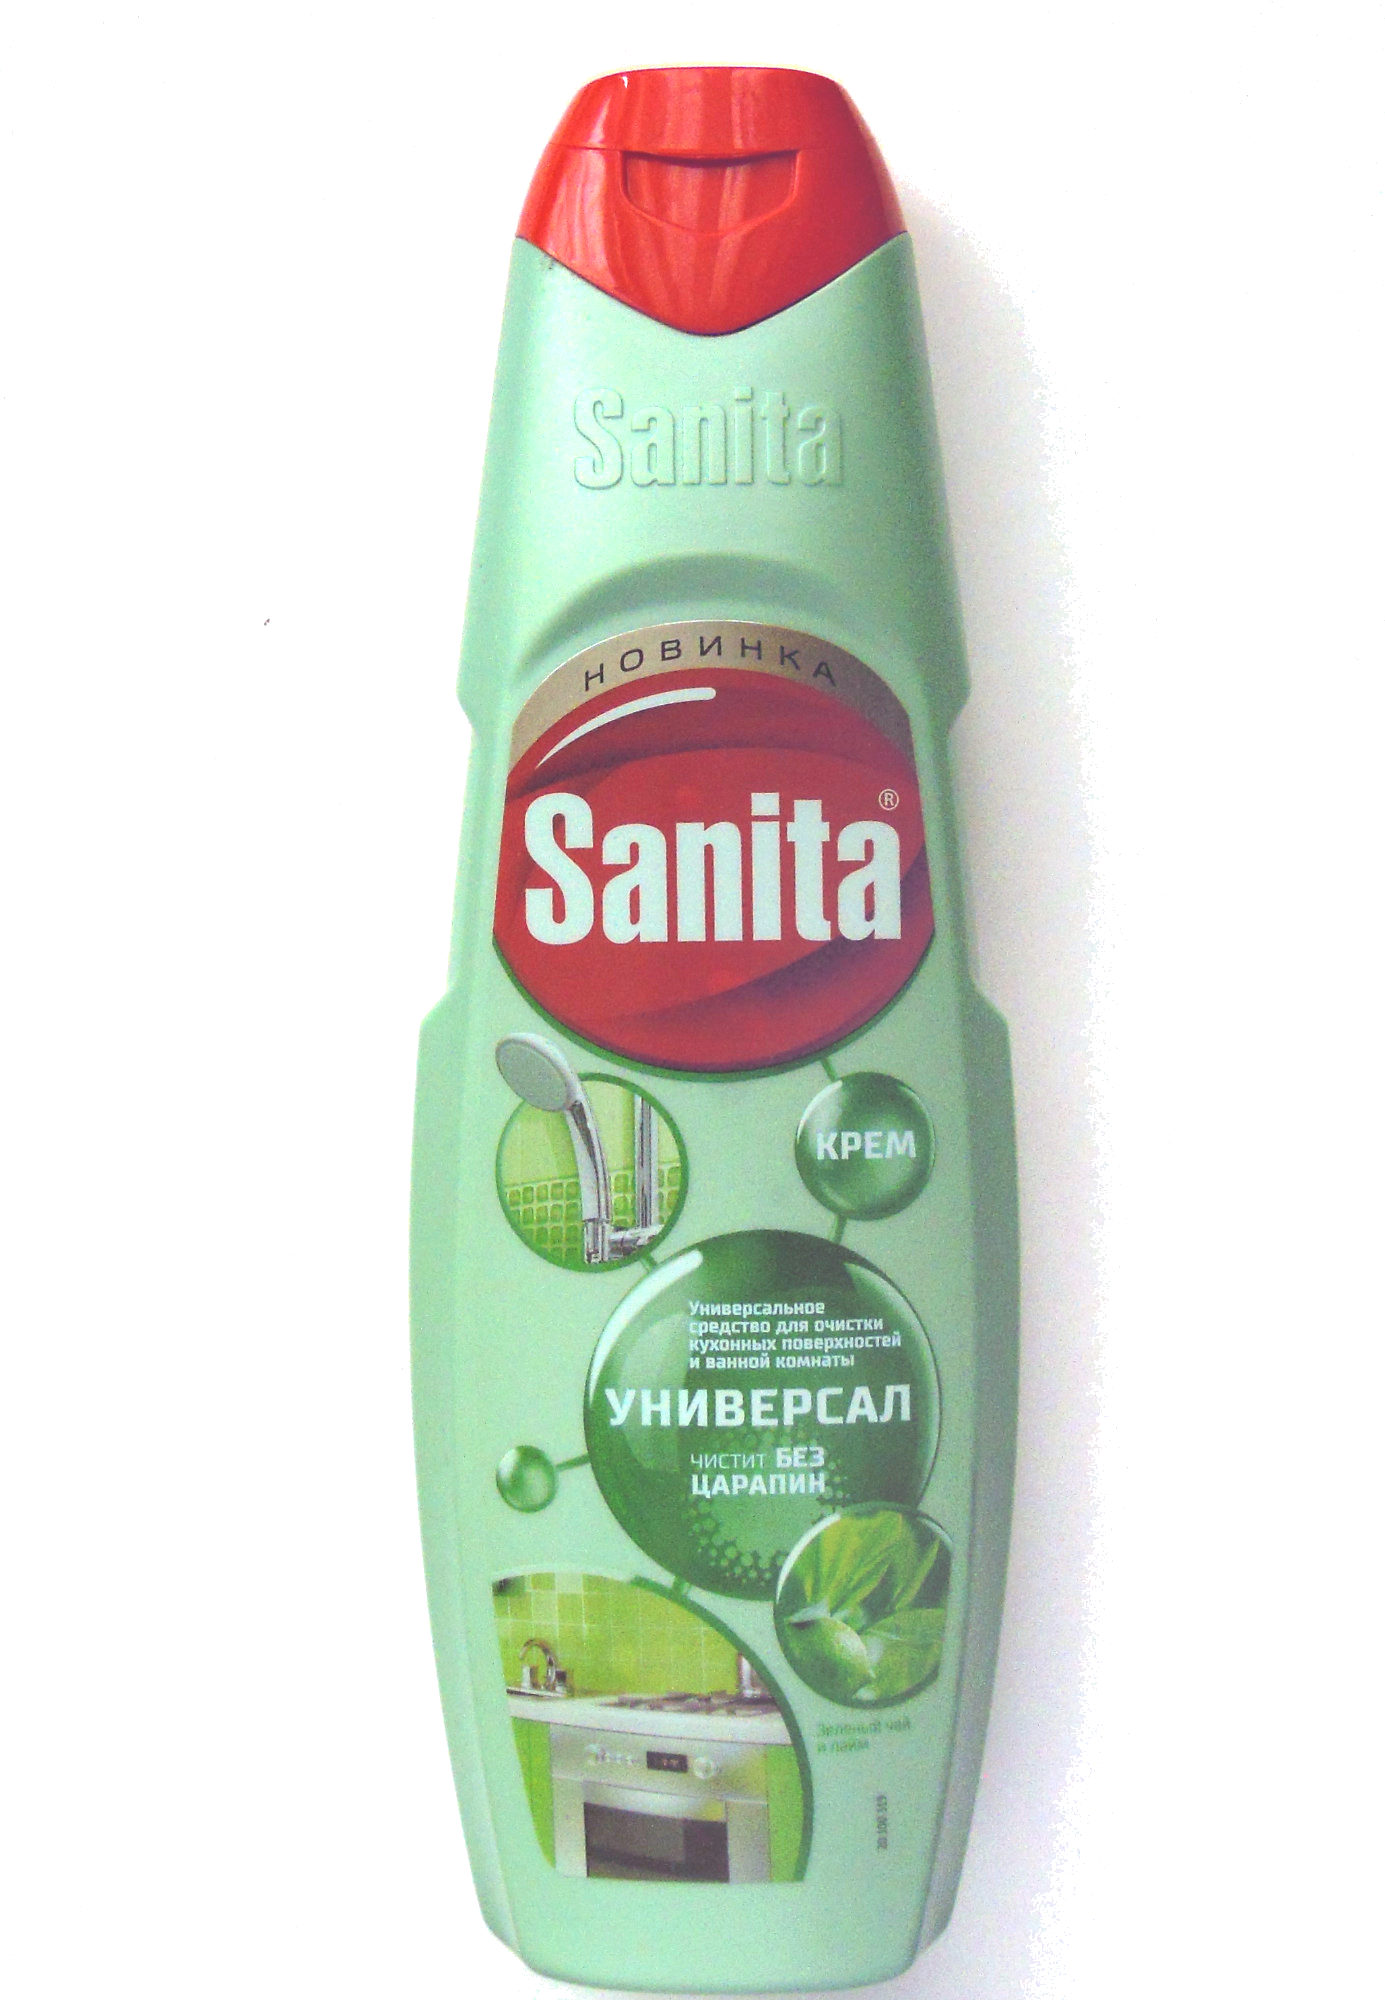 «Sanita» крем Универсал, зелёный чай и лайм - Product - ru